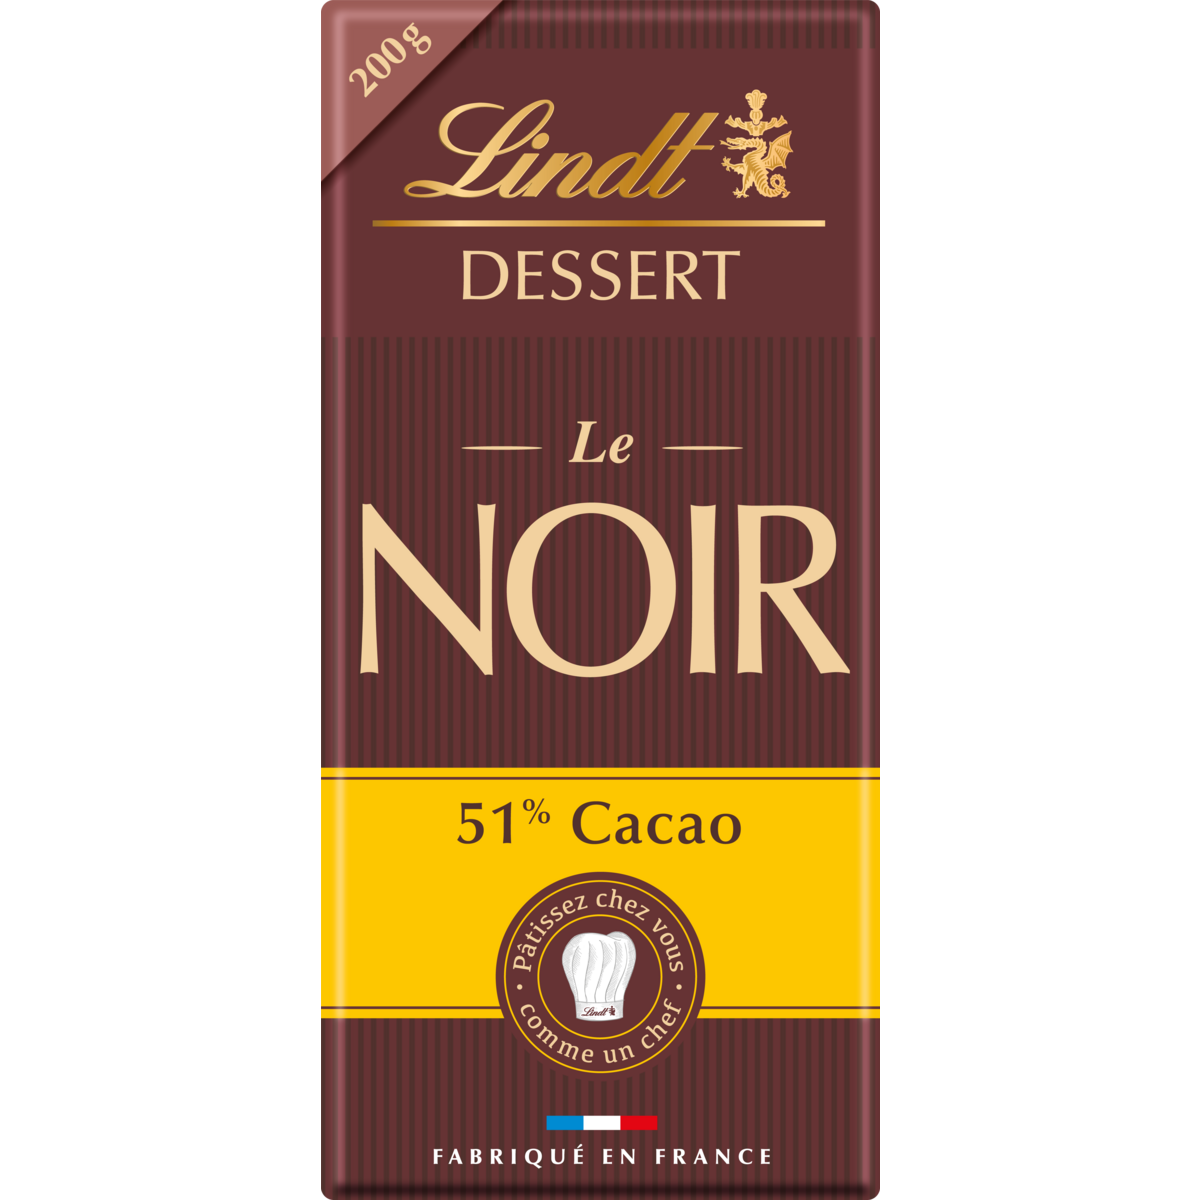 LINDT Dessert tablette de chocolat noir 51% cacao 1 pièce 200g